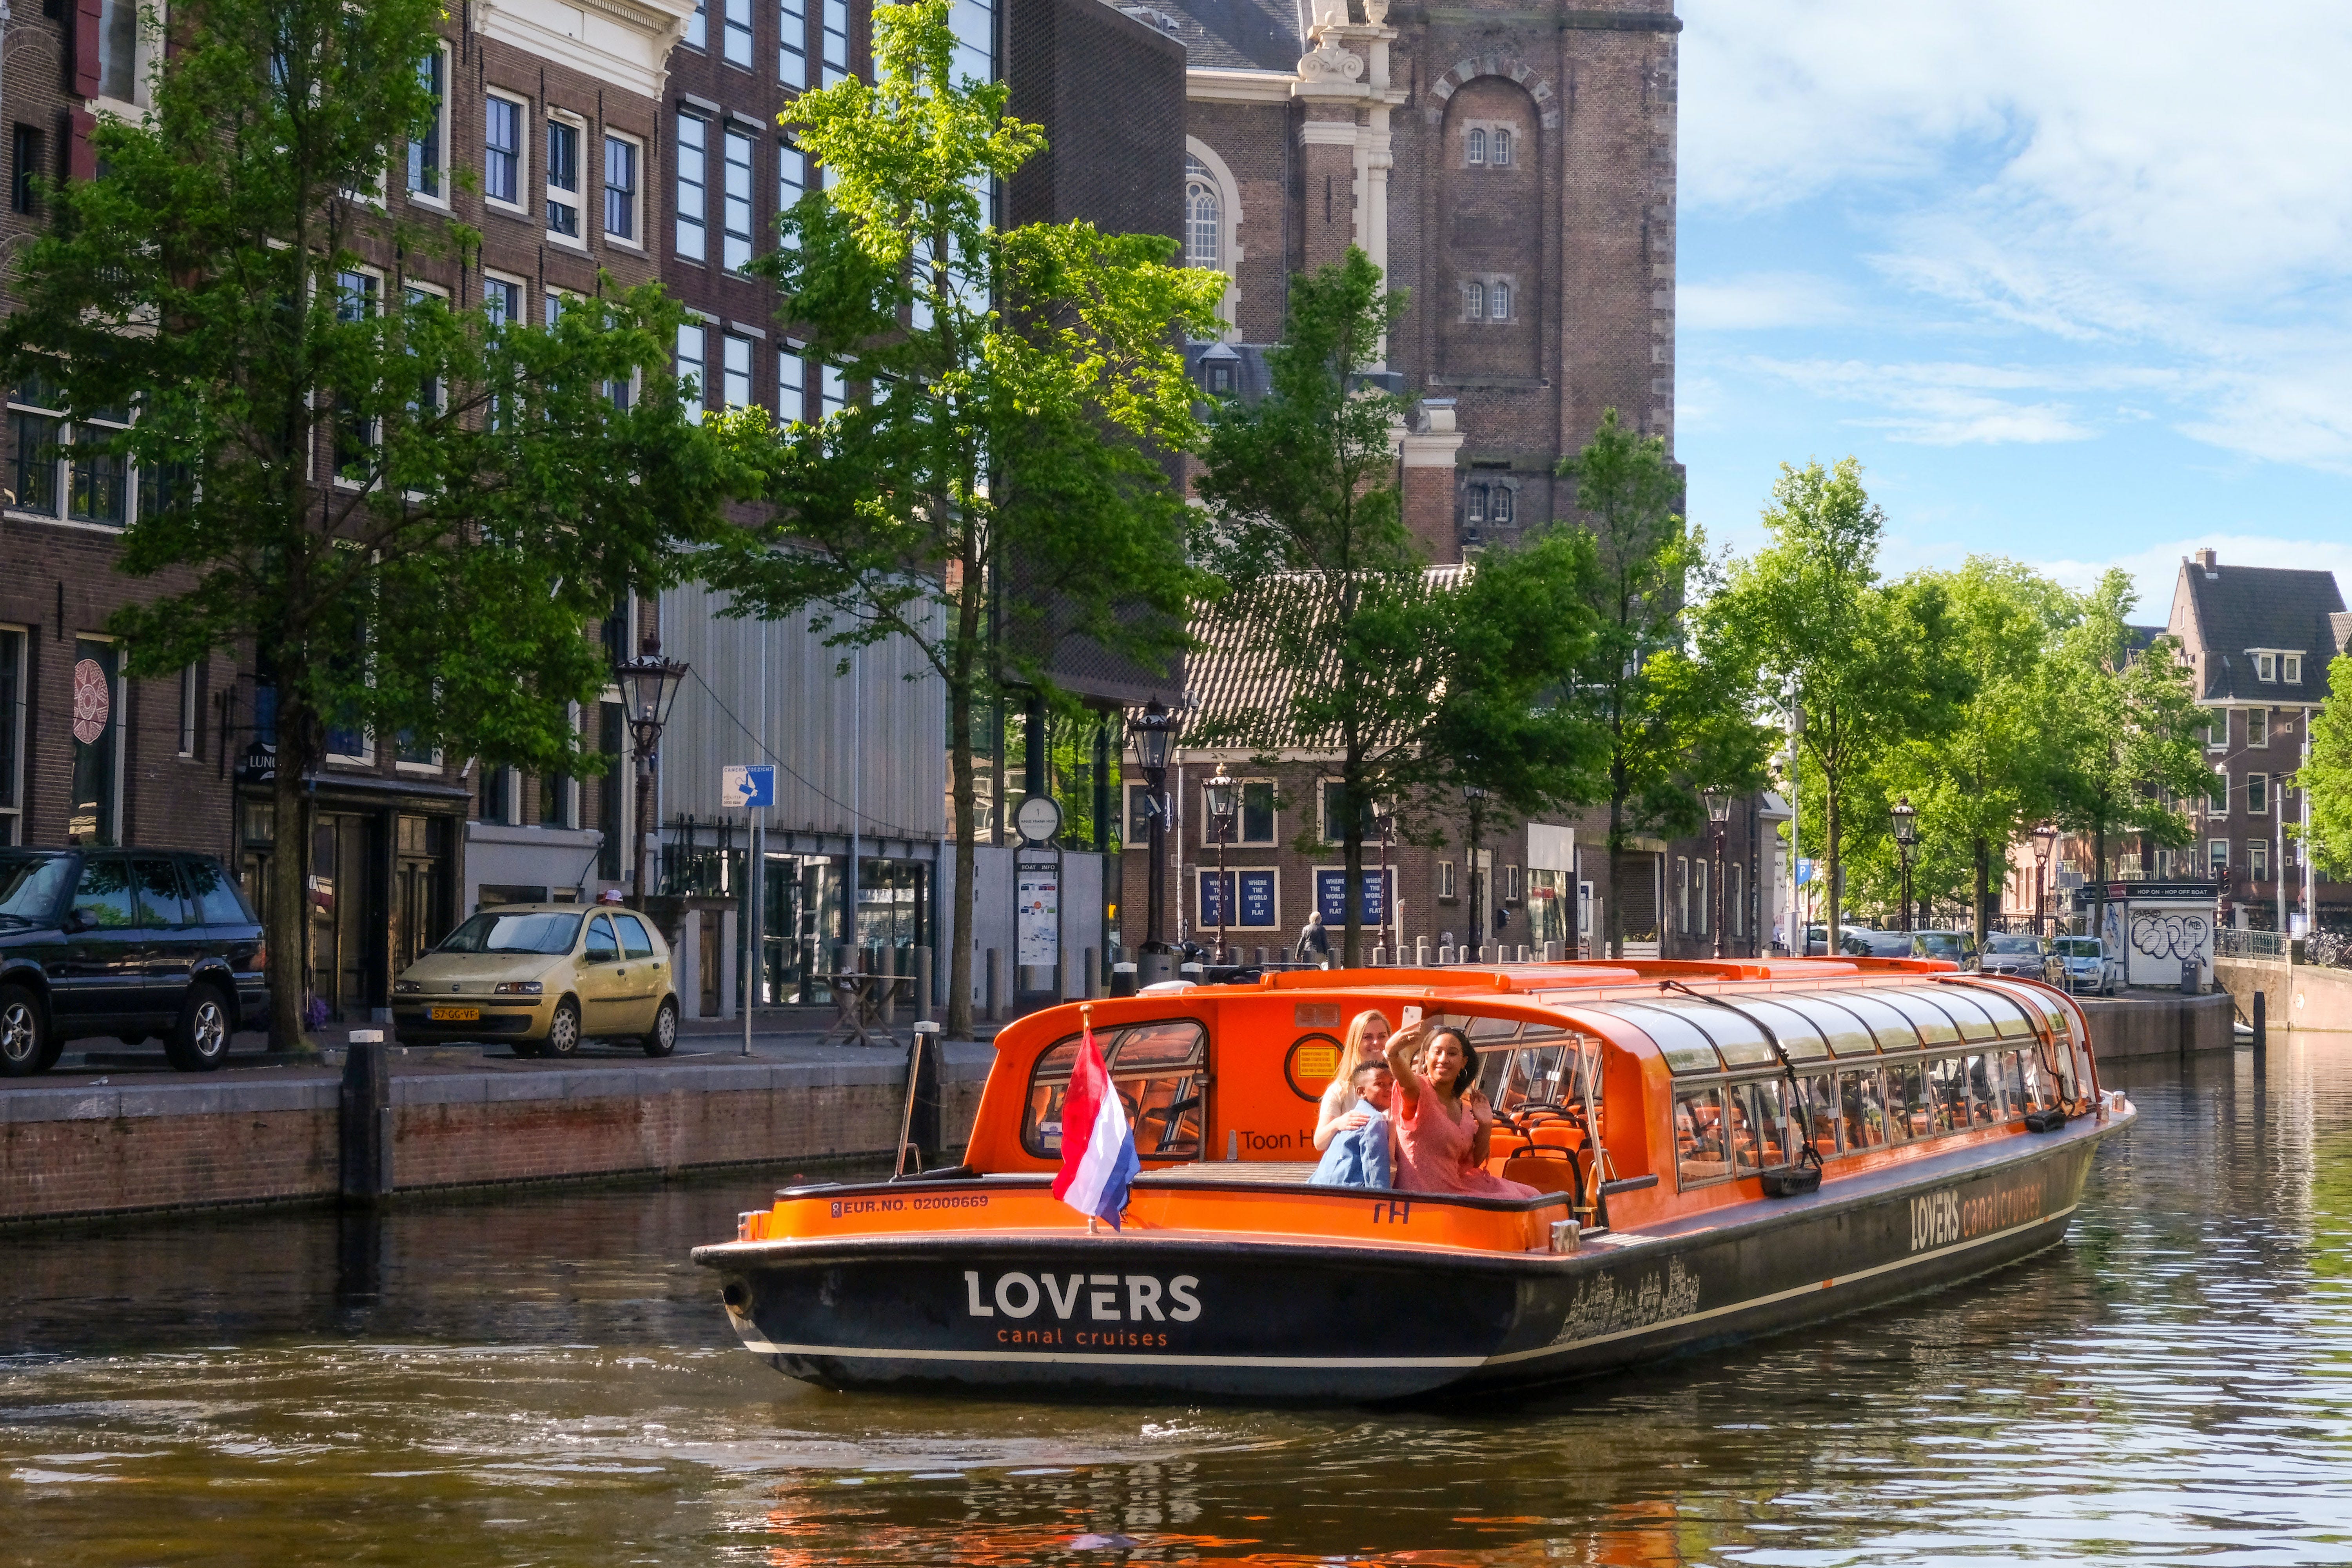 Biglietto d'ingresso al museo Red Light Secrets e crociera di un'ora sui canali ad Amsterdam